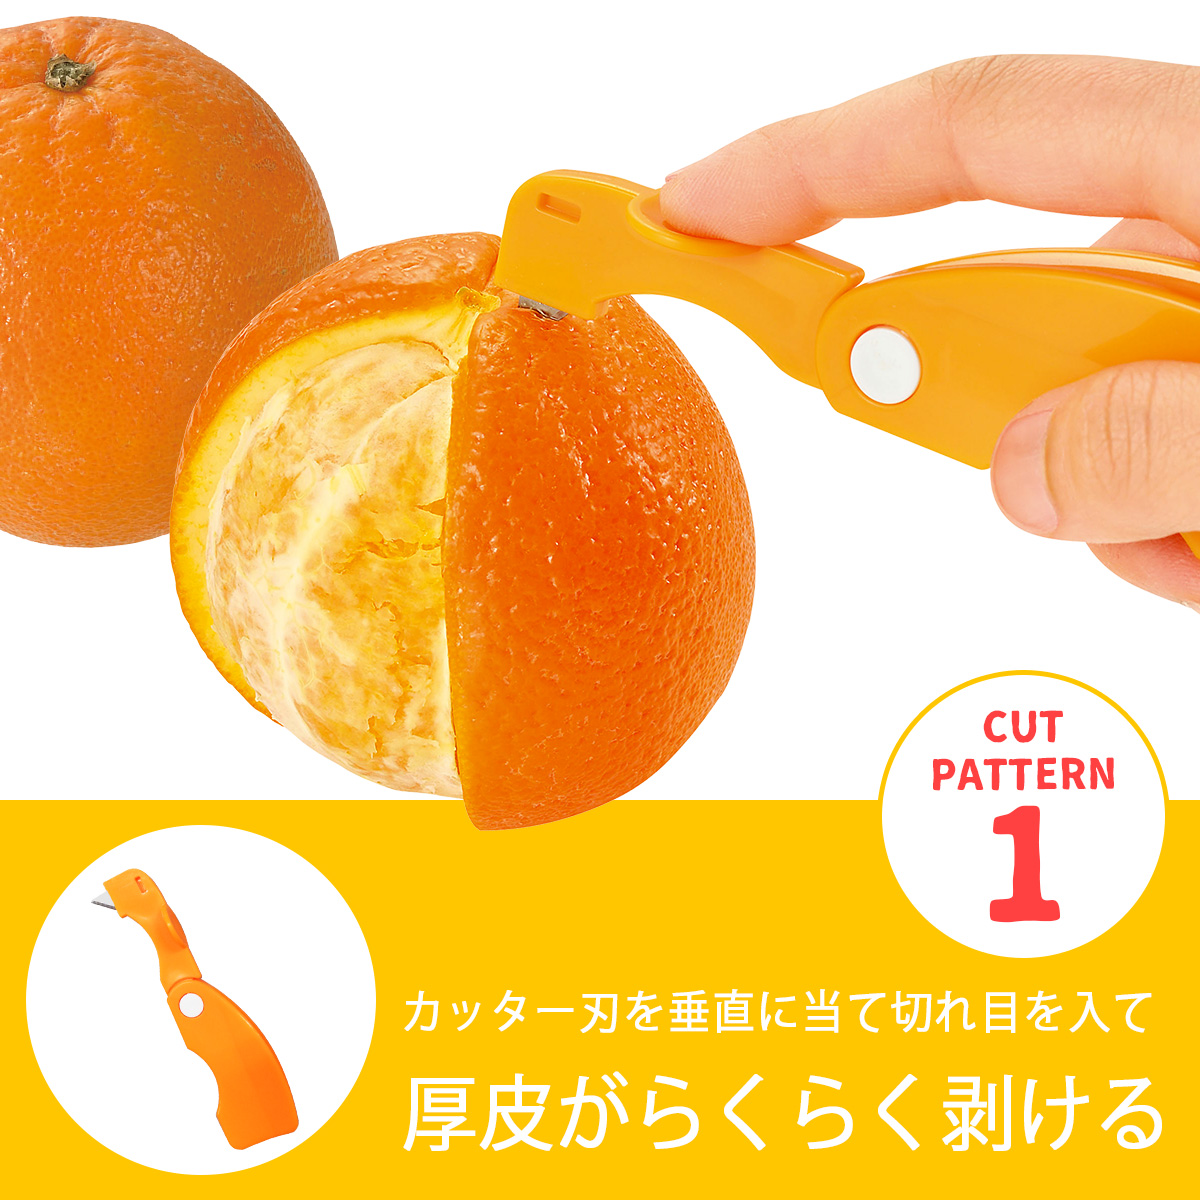 楽天市場 フルベジ オレンジカッター日本製 皮むき 夏ミカン いよかんはっさく 厚皮 薄皮 下村工業デザート フルーツカット おやつ食べやすい ゼリー ヨーグルトトッピング エルル